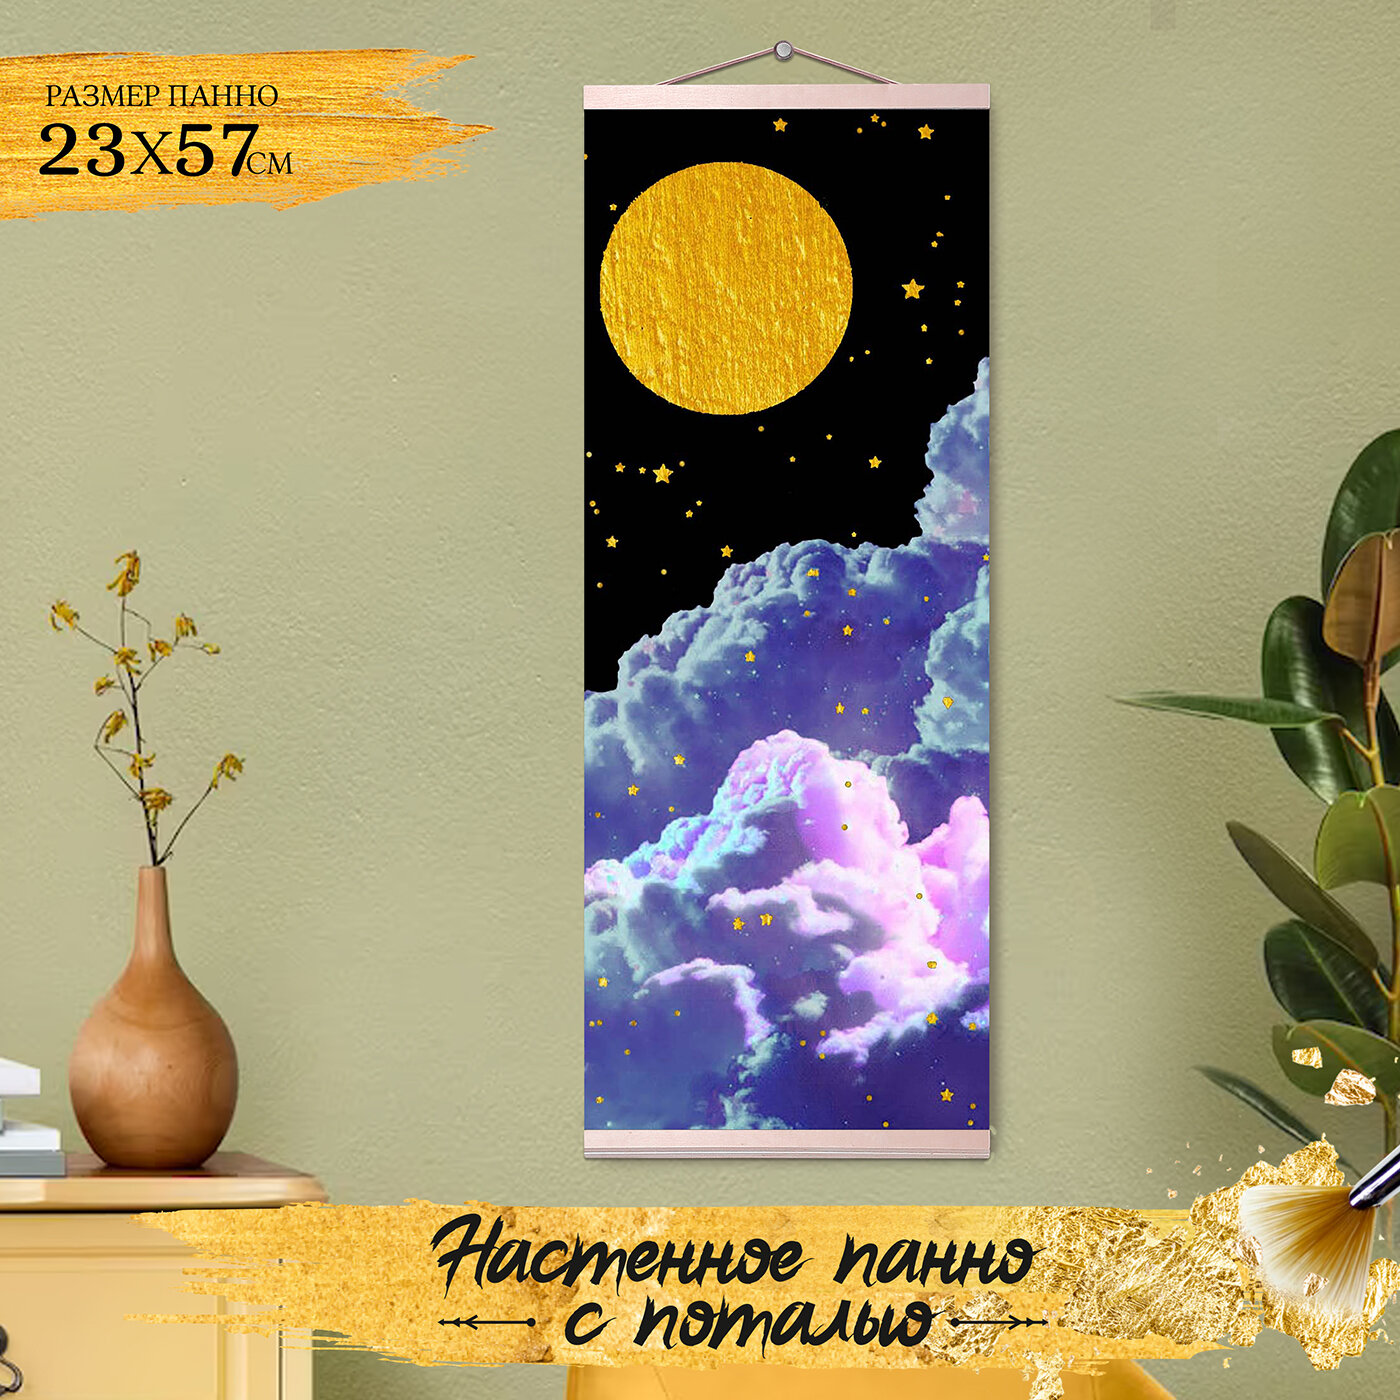 Картина по номерам с поталью (23х57) Панно Звездное ночное небо (8 цветов) HRP0148